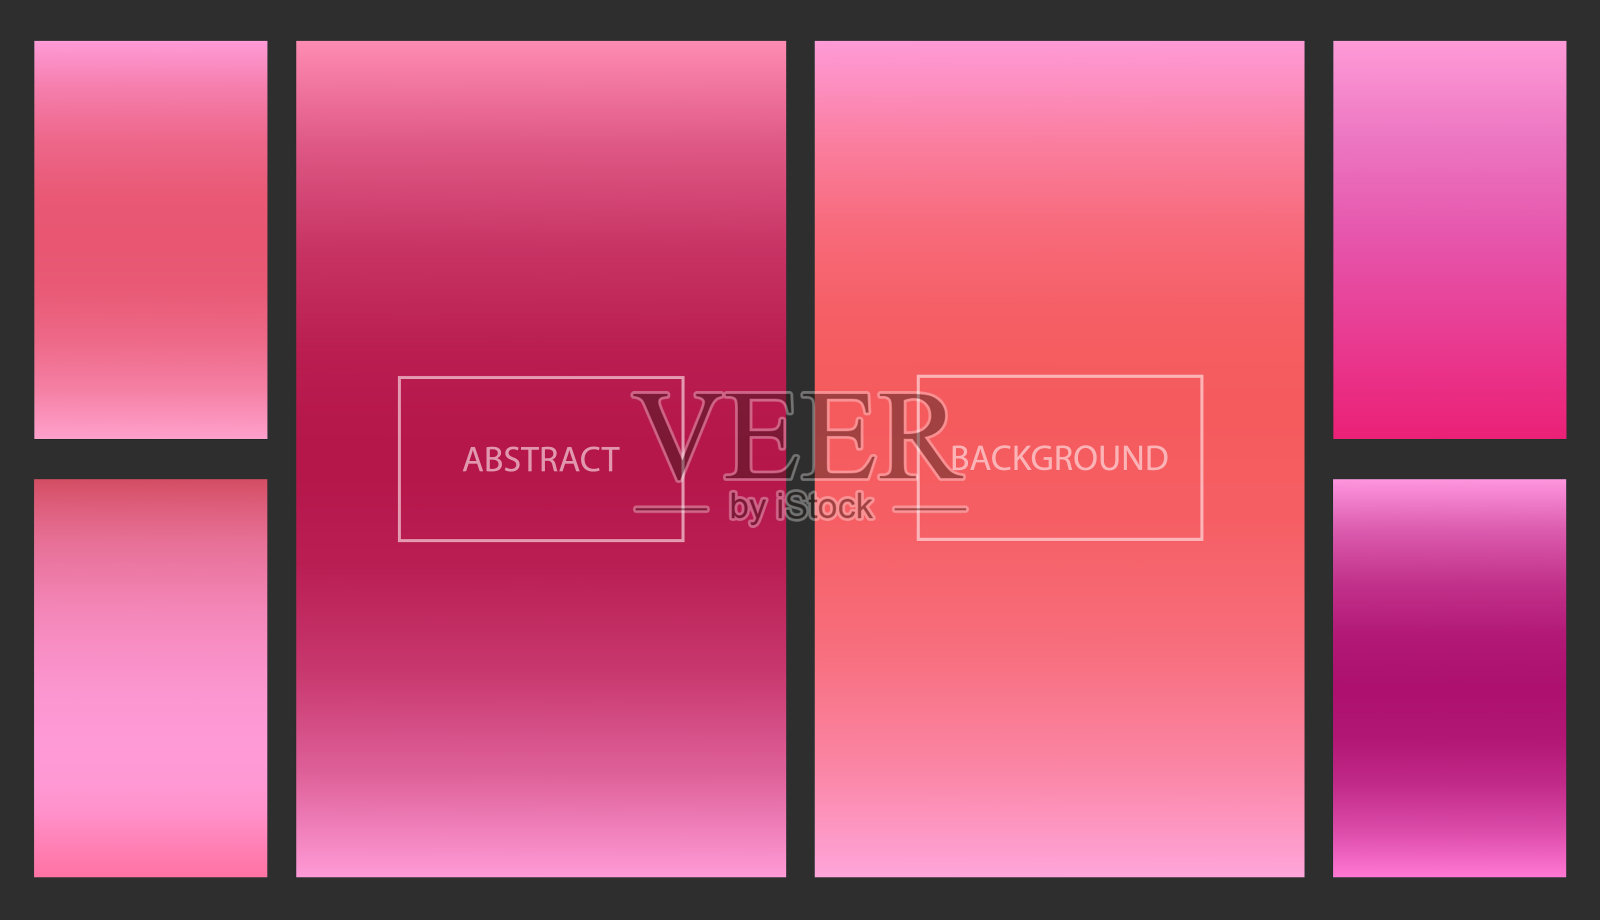 明亮的红色和粉红色梯度背景设置插画图片素材